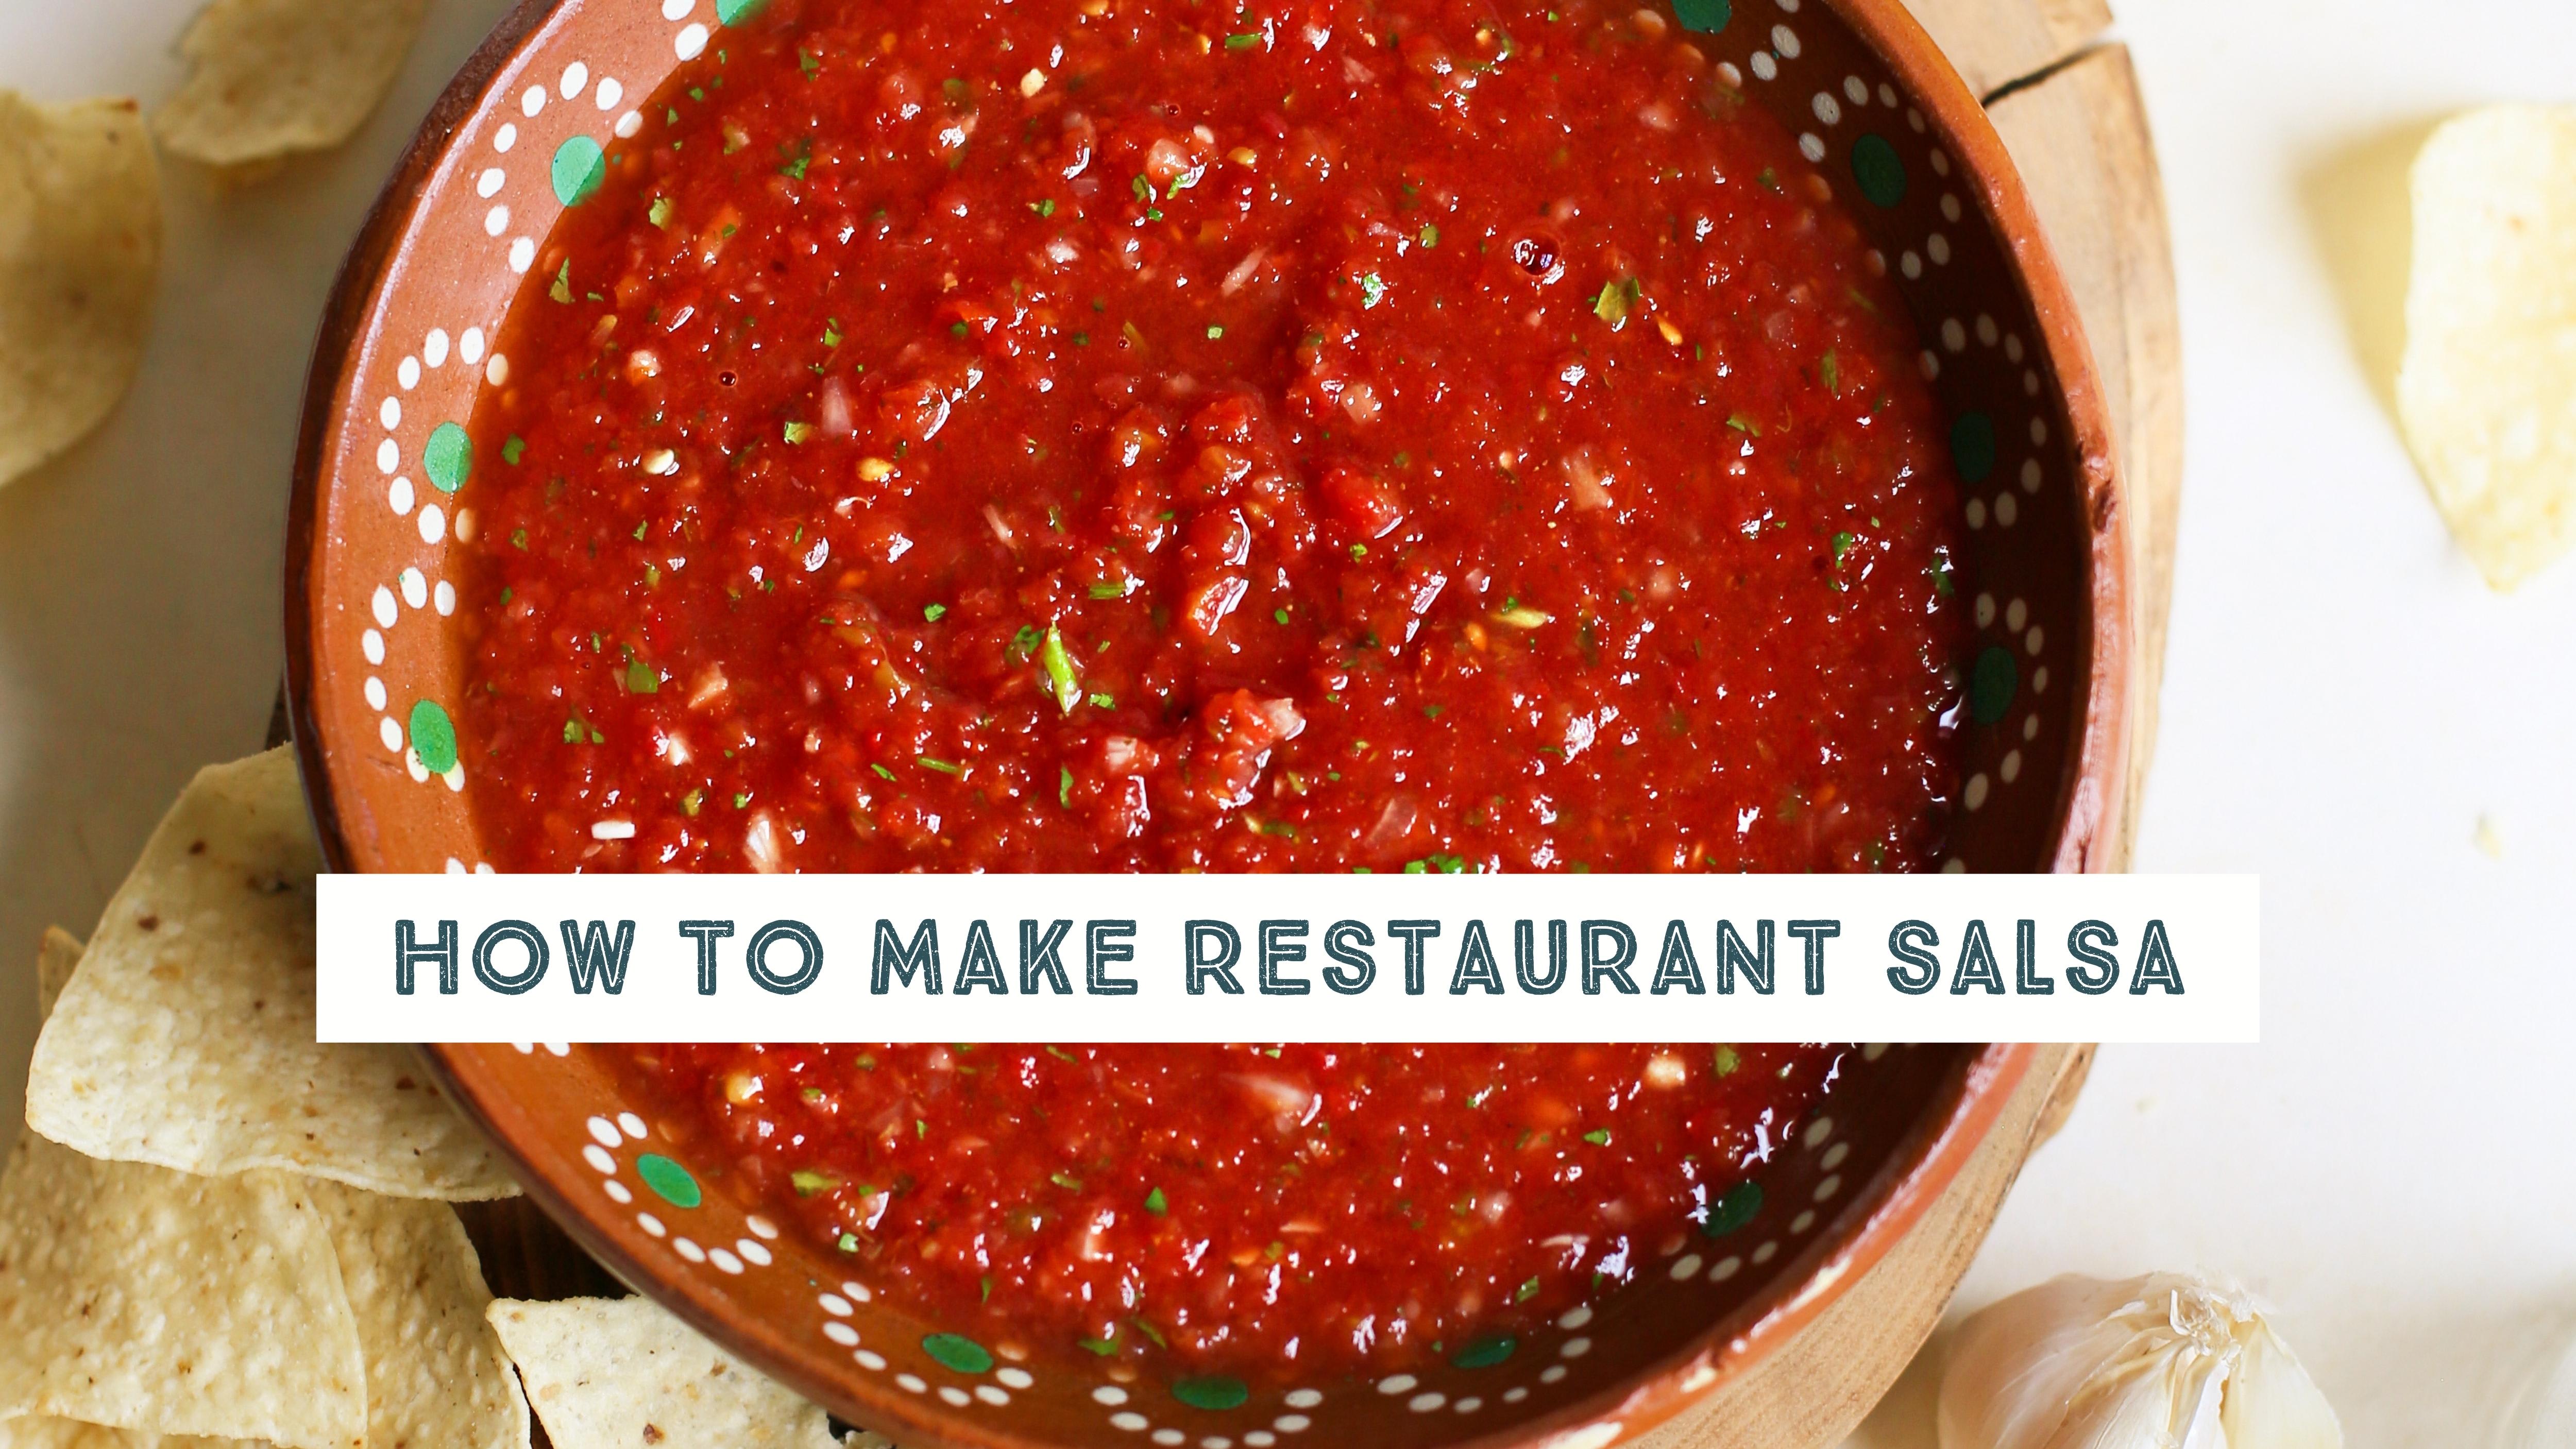 Fresh Tomato Salsa Recipe  How To Make Restaurant Style Tomato Salsa